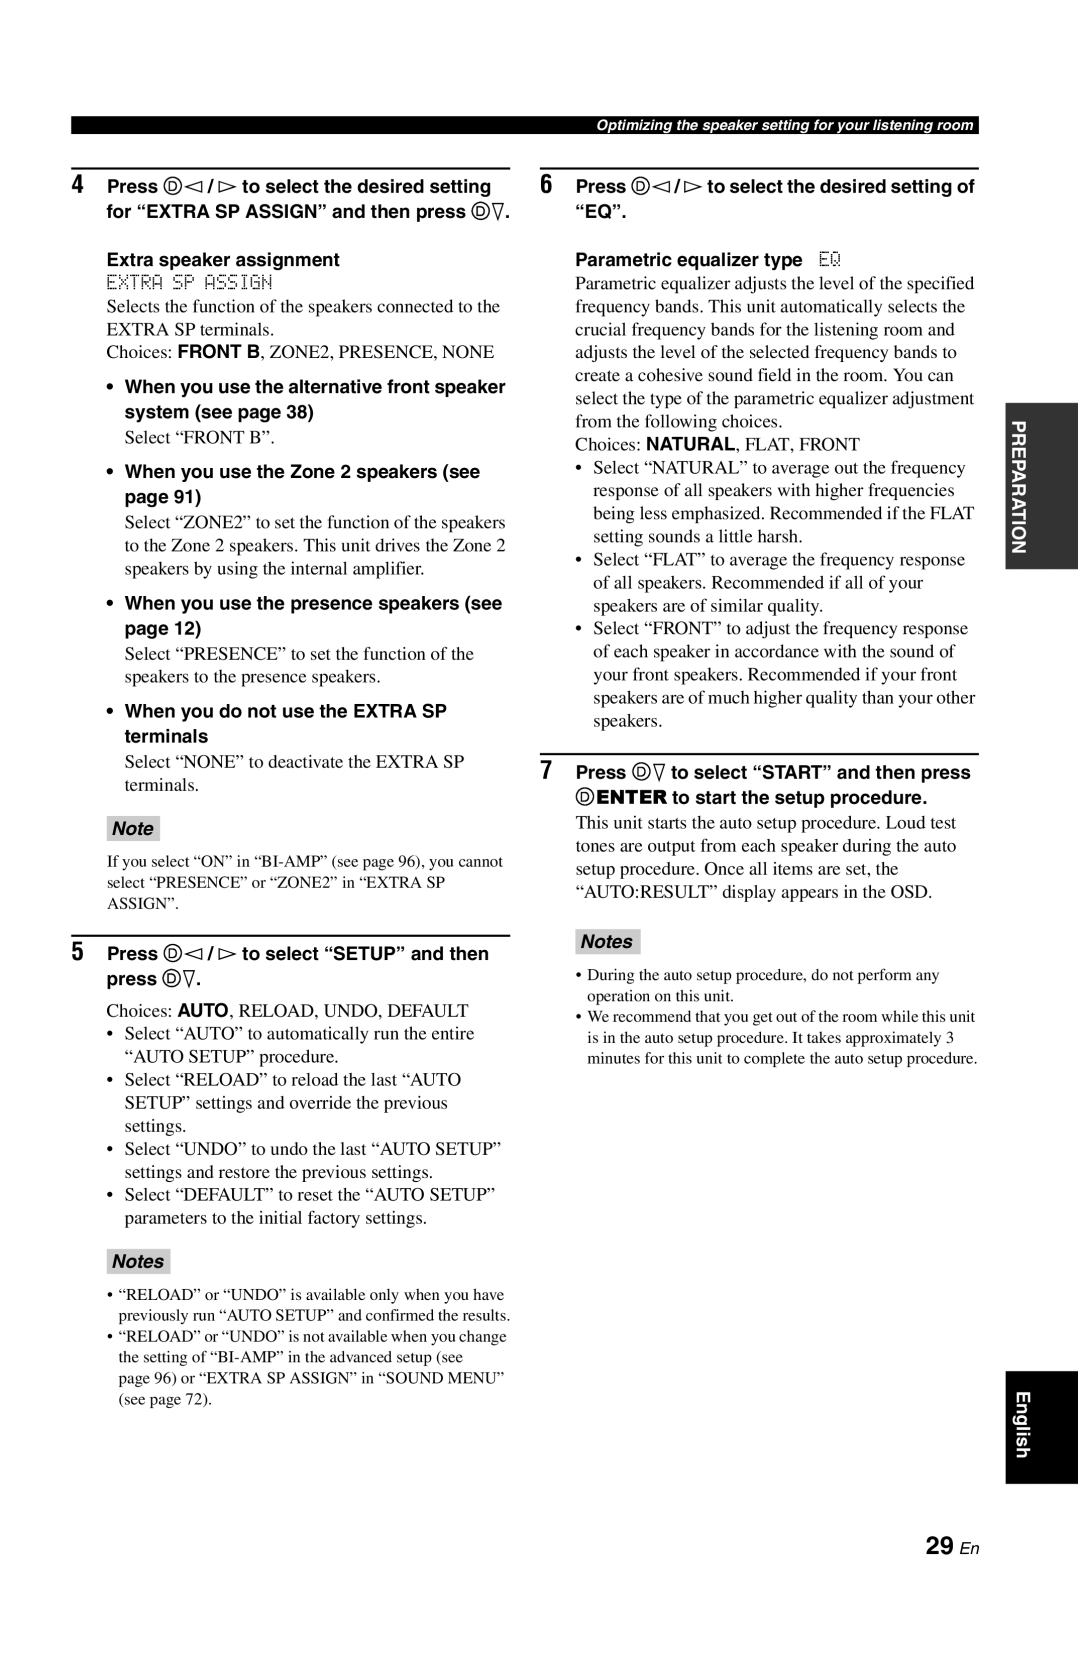 Yamaha RX-V861 owner manual 29 En, Notes 